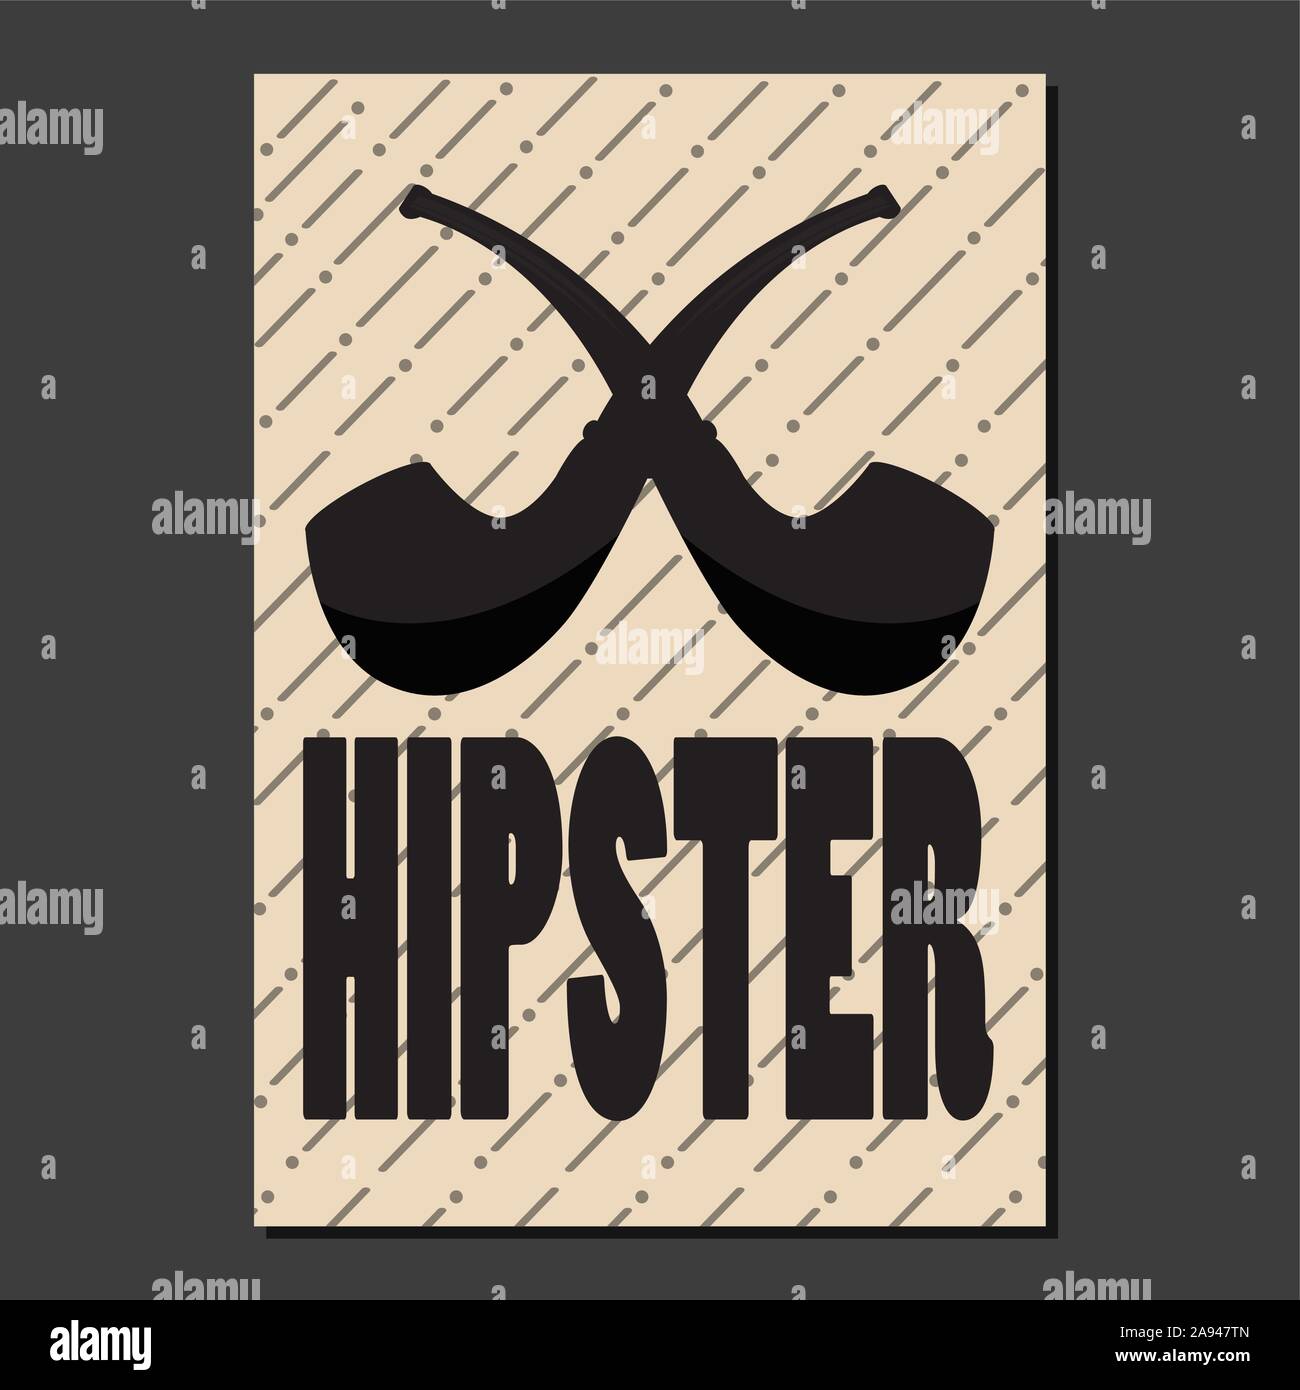 Hipster cartel con un tabaco de tubos - ilustración vectorial Ilustración del Vector